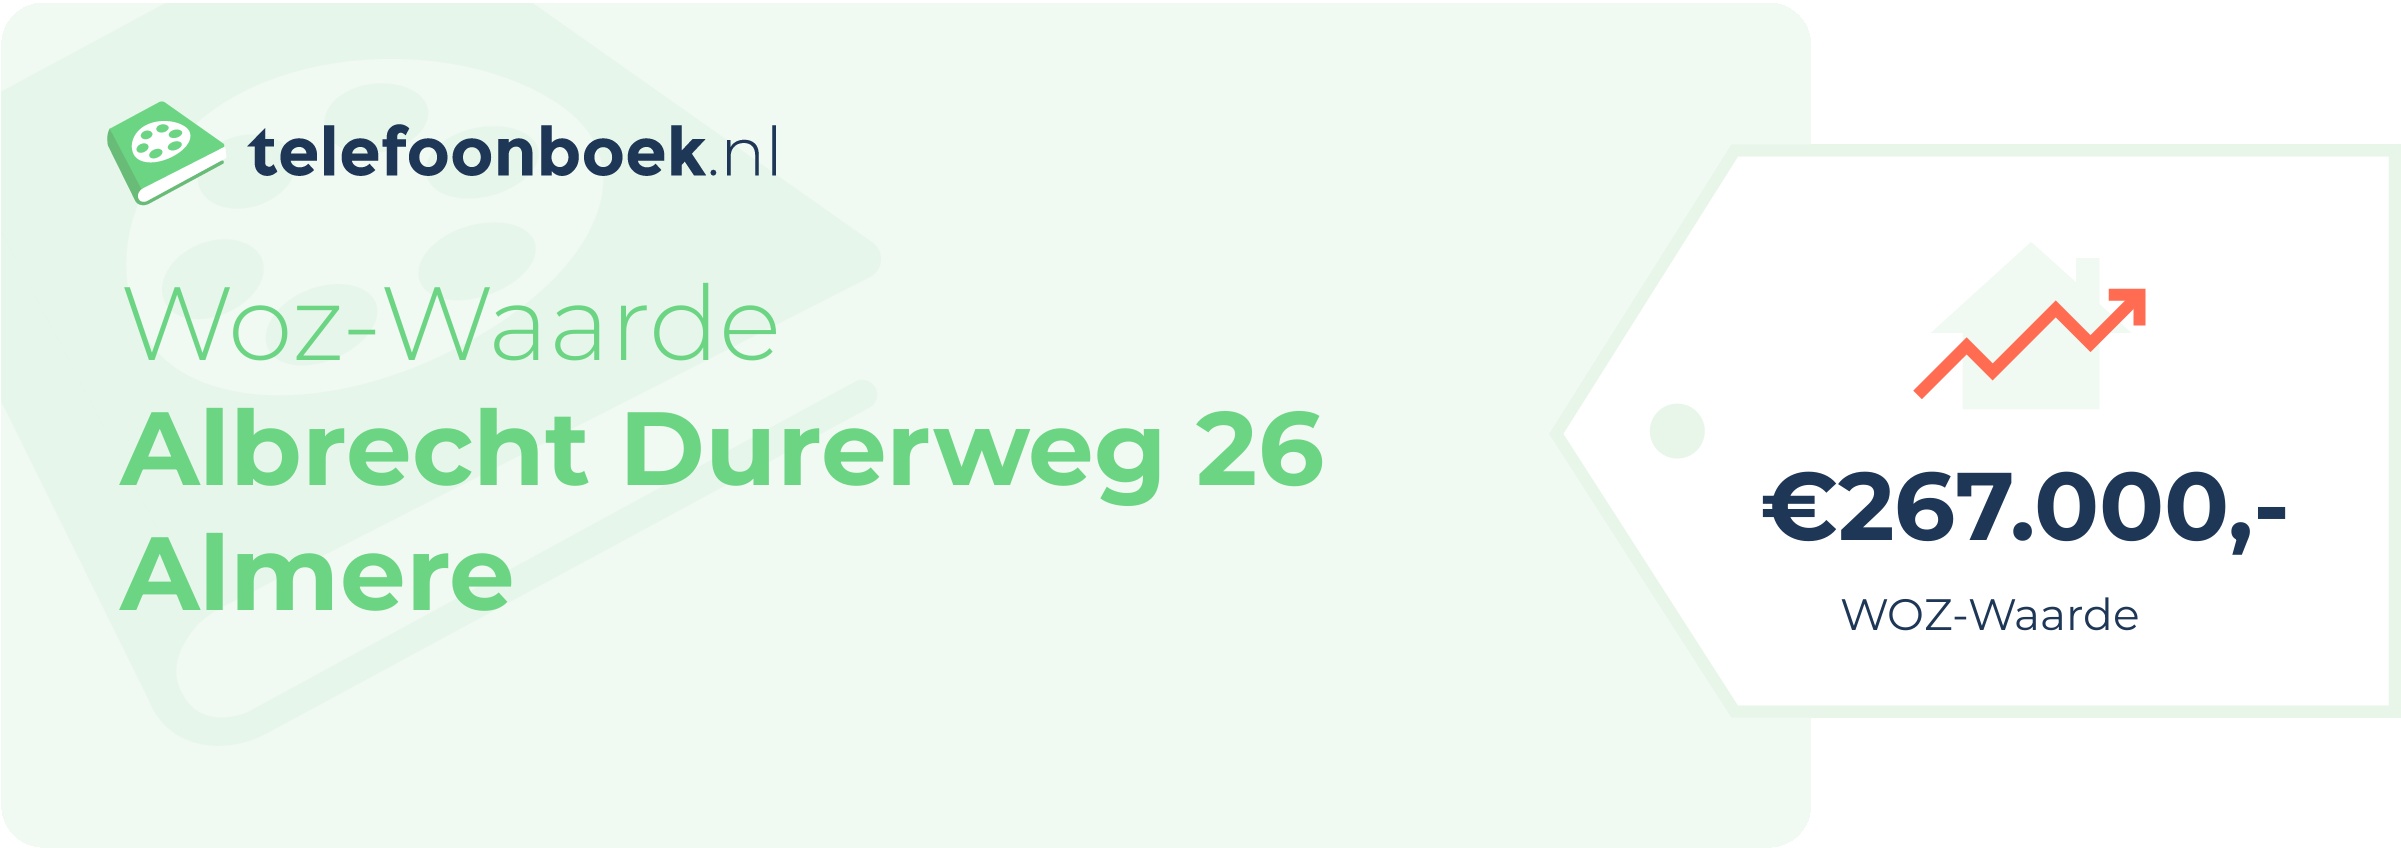 WOZ-waarde Albrecht Durerweg 26 Almere